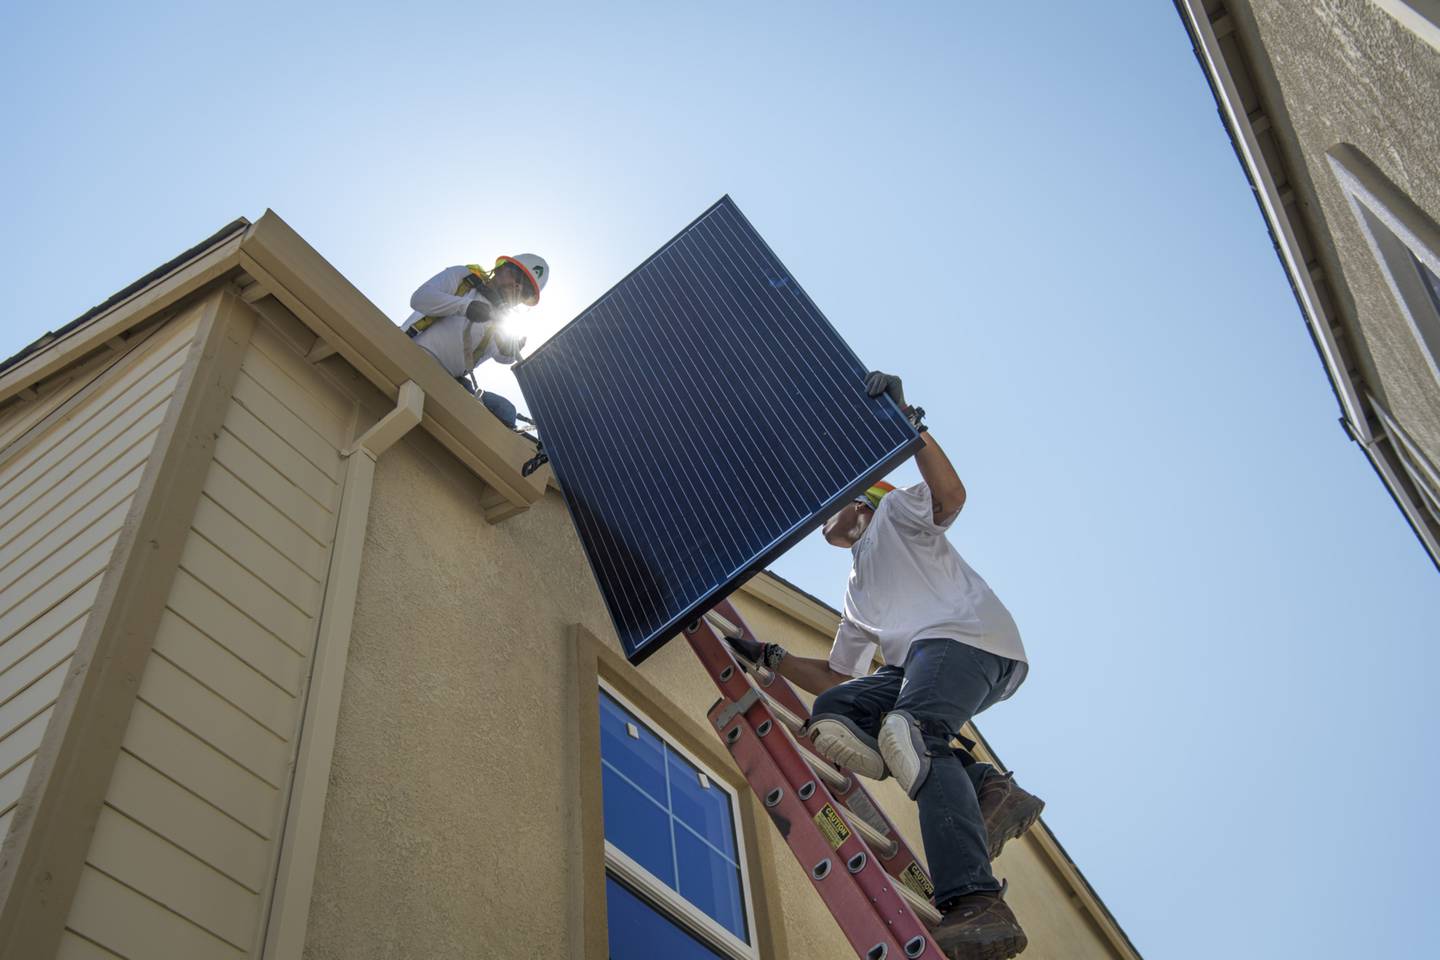 México discute una reforma eléctrica que modificaría el mercado en favor de la empresa estatal CFE, pero el gobierno mexicano afirma que los contratos de interconexión para techos solares no serán afectados.